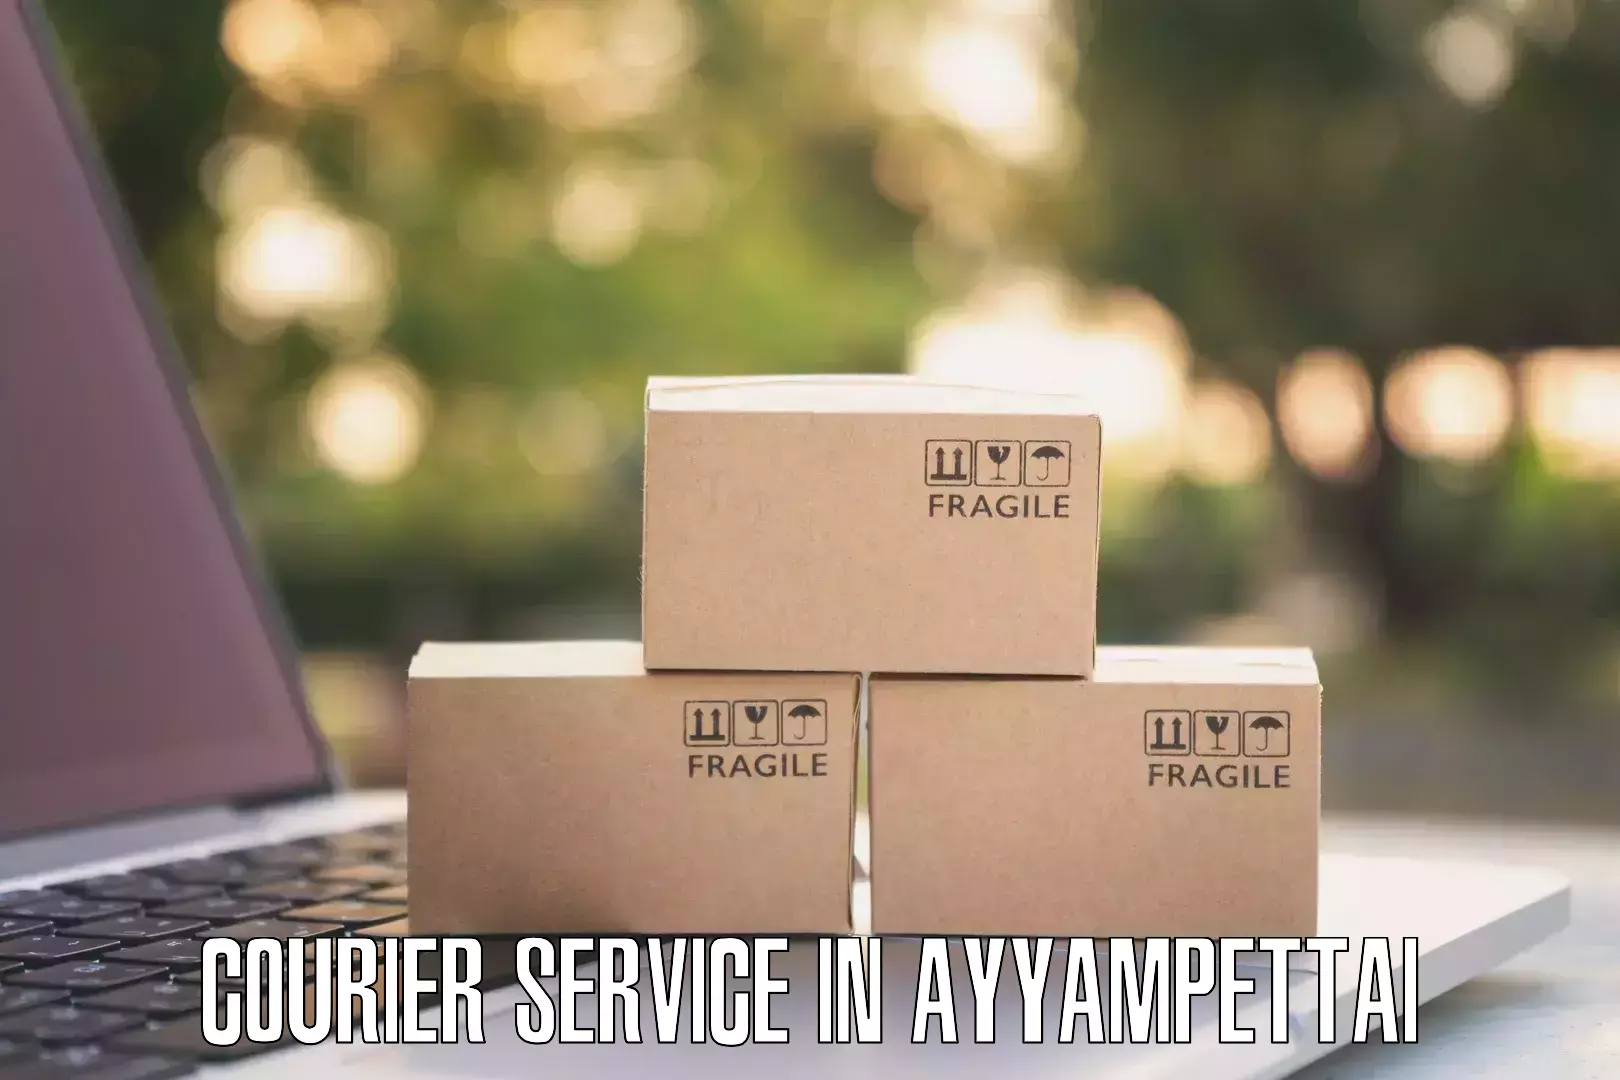 Bulk shipping discounts in Ayyampettai